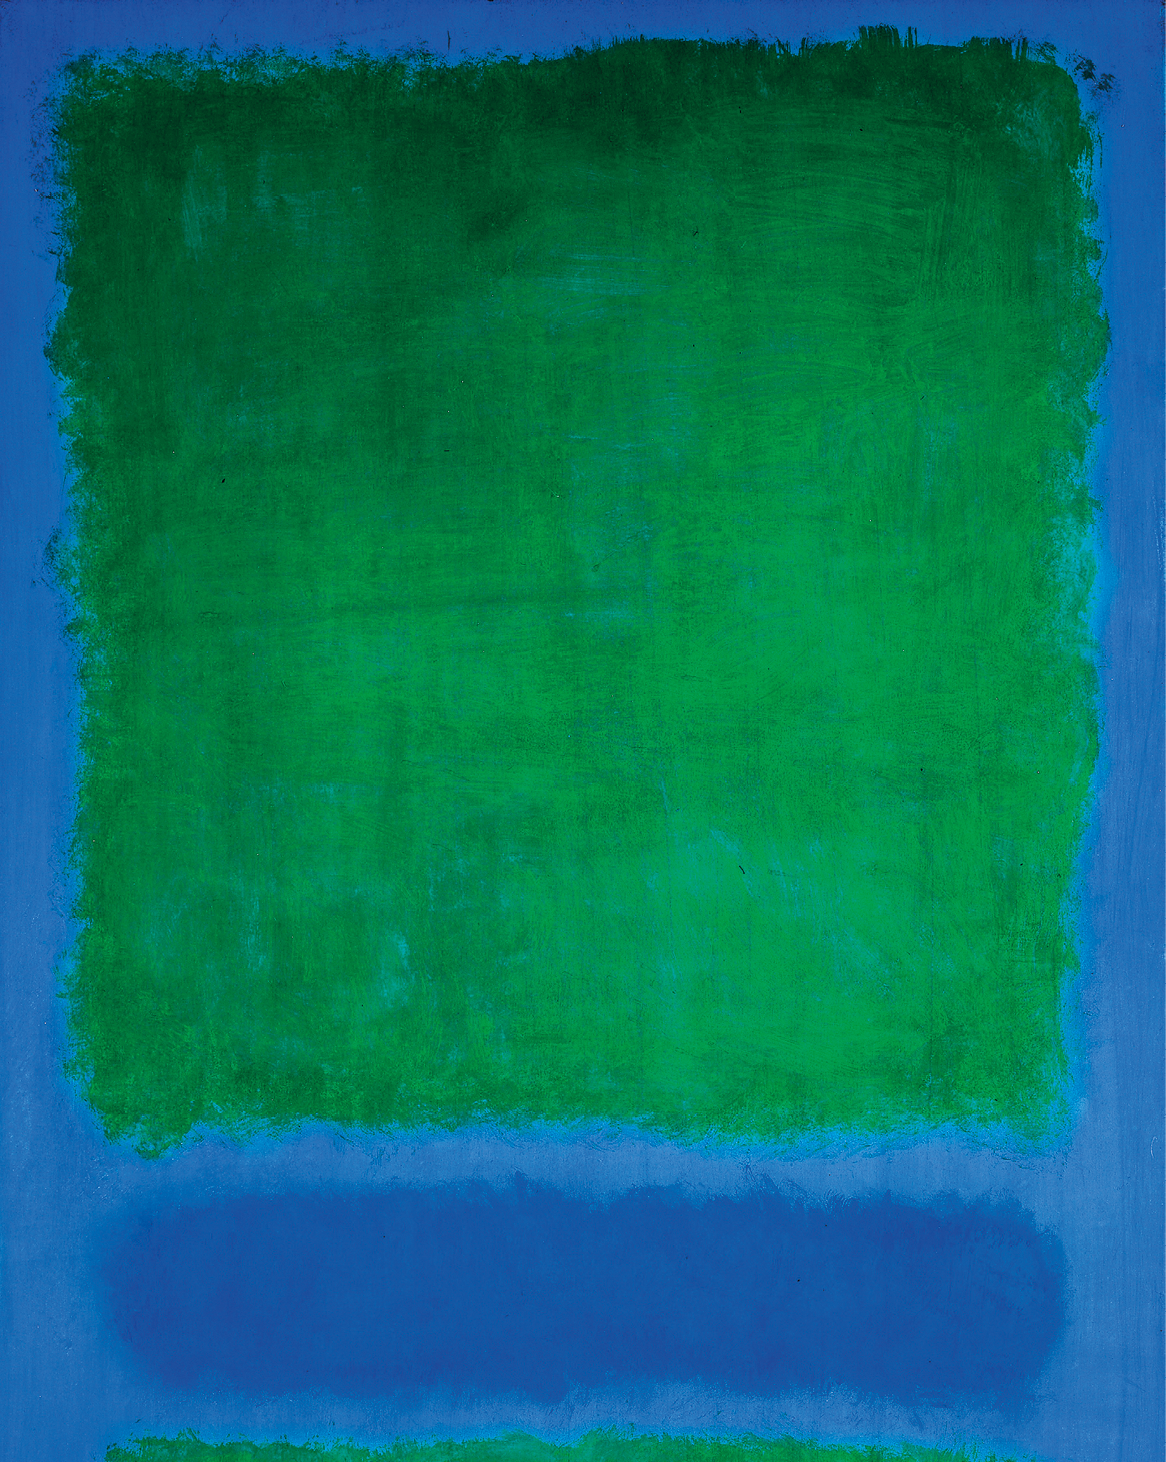 Pintura abstrata. Em um fundo azul escuro, há um quadrado verde na parte superior. Abaixo, bem no canto inferior central, há uma fina camada de verde. Entre ela e o quadrado, há uma mancha em tom mais escuro de azul.